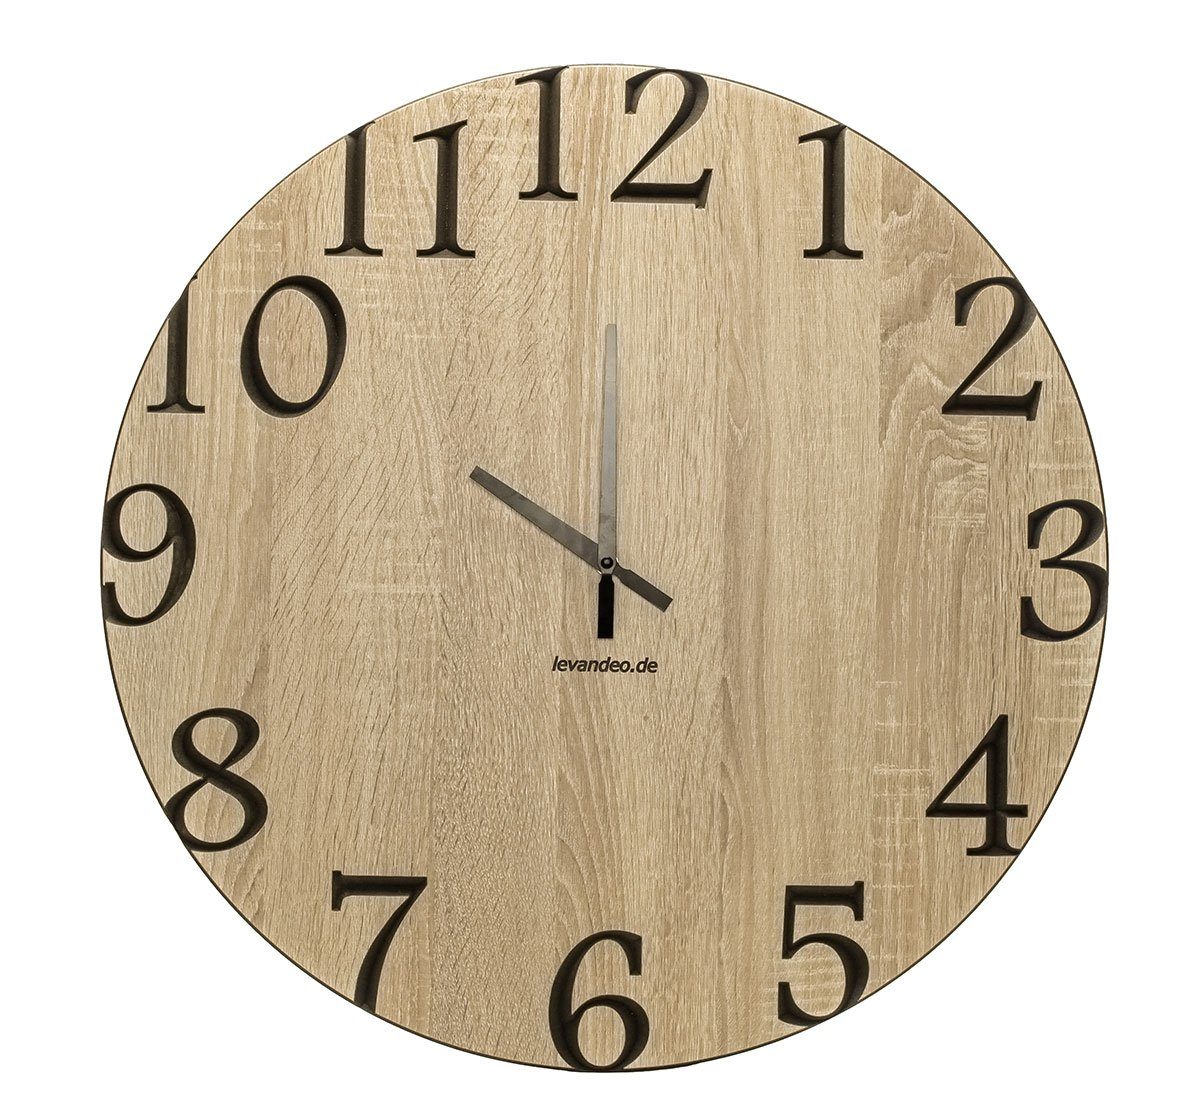 klassisch klassisch) (Wand-Uhr Deutsche Levandeo® Wanduhr Eiche Eiche Sonoma Holz Herstellung 60cm